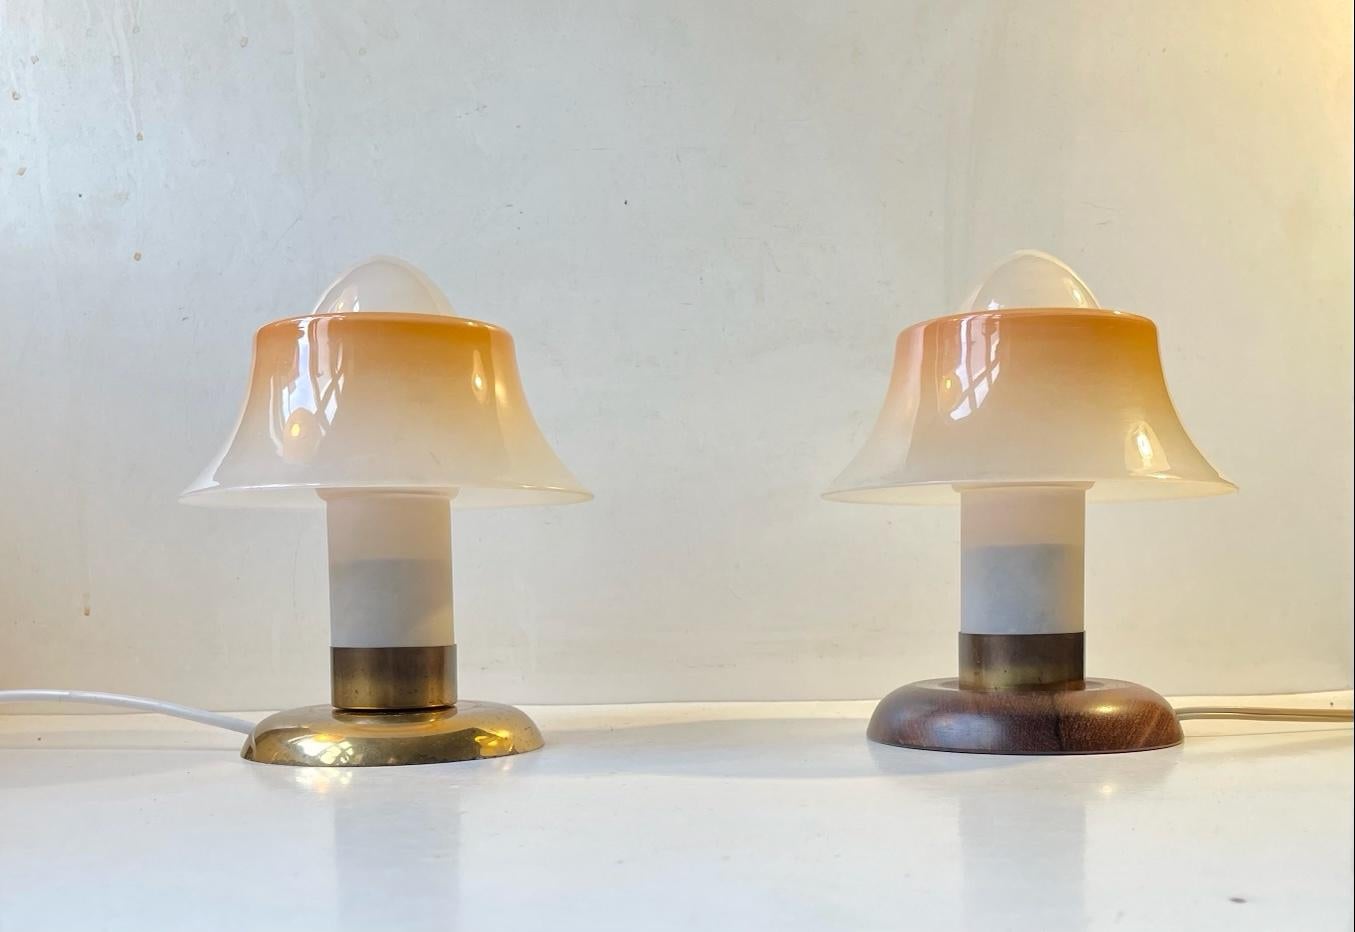 Un ensemble rare de petites lampes de table. Ils sont fabriqués en laiton et en verre monocouche dépoli/partiellement peint. Veuillez noter que les bases sont différentes. Ils ont été fabriqués par Fog & Mørup au Danemark dans les années 1940 ou